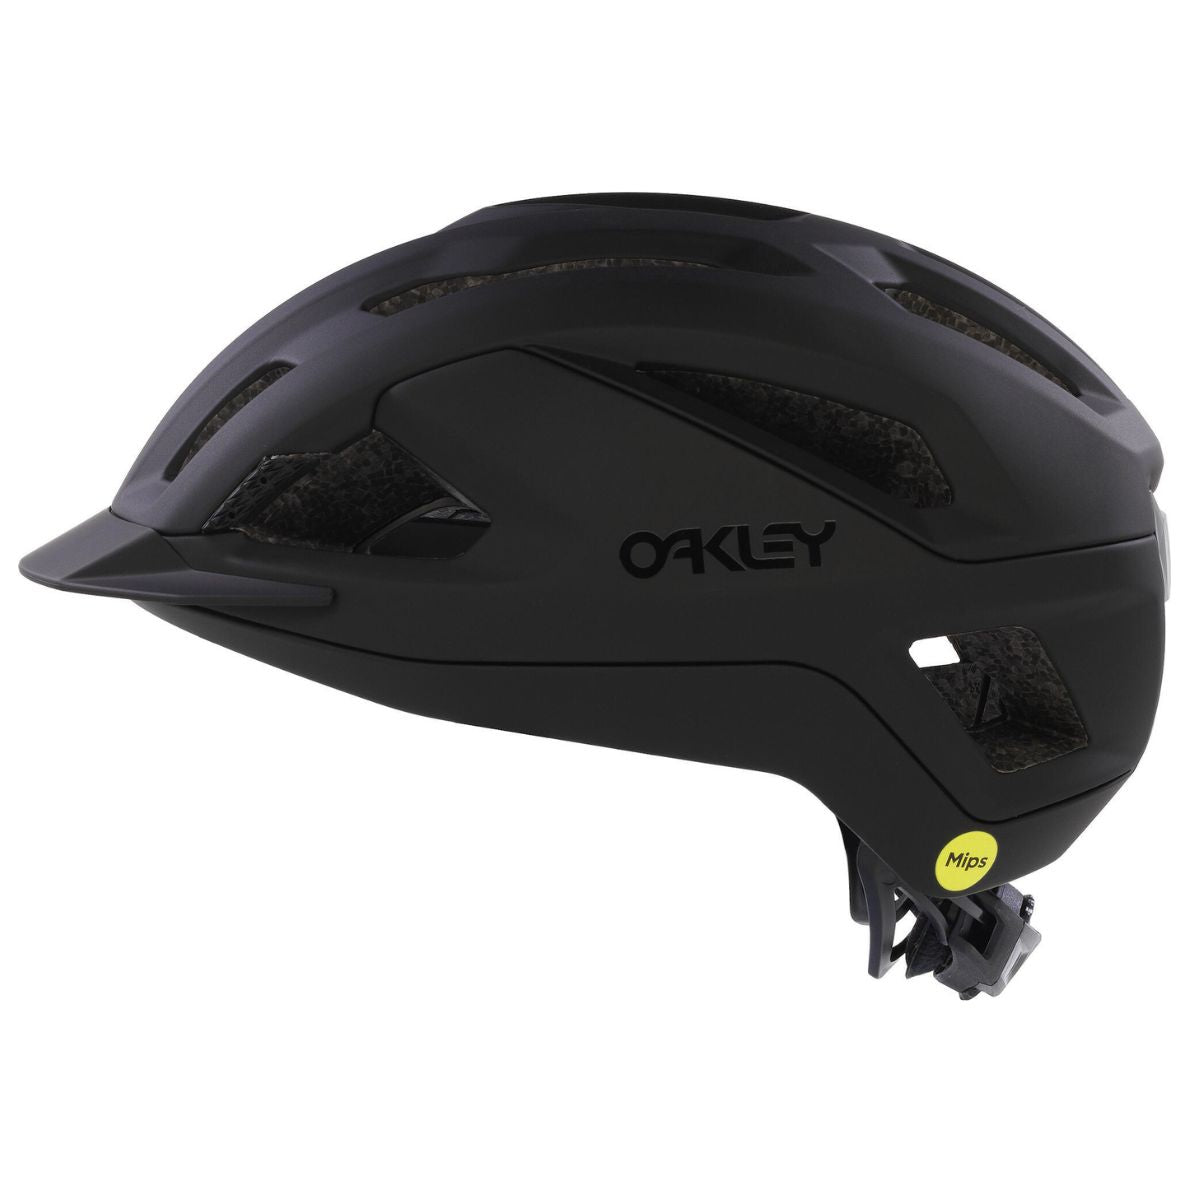 Oakley ARO3 Fahrrad Helm Herren